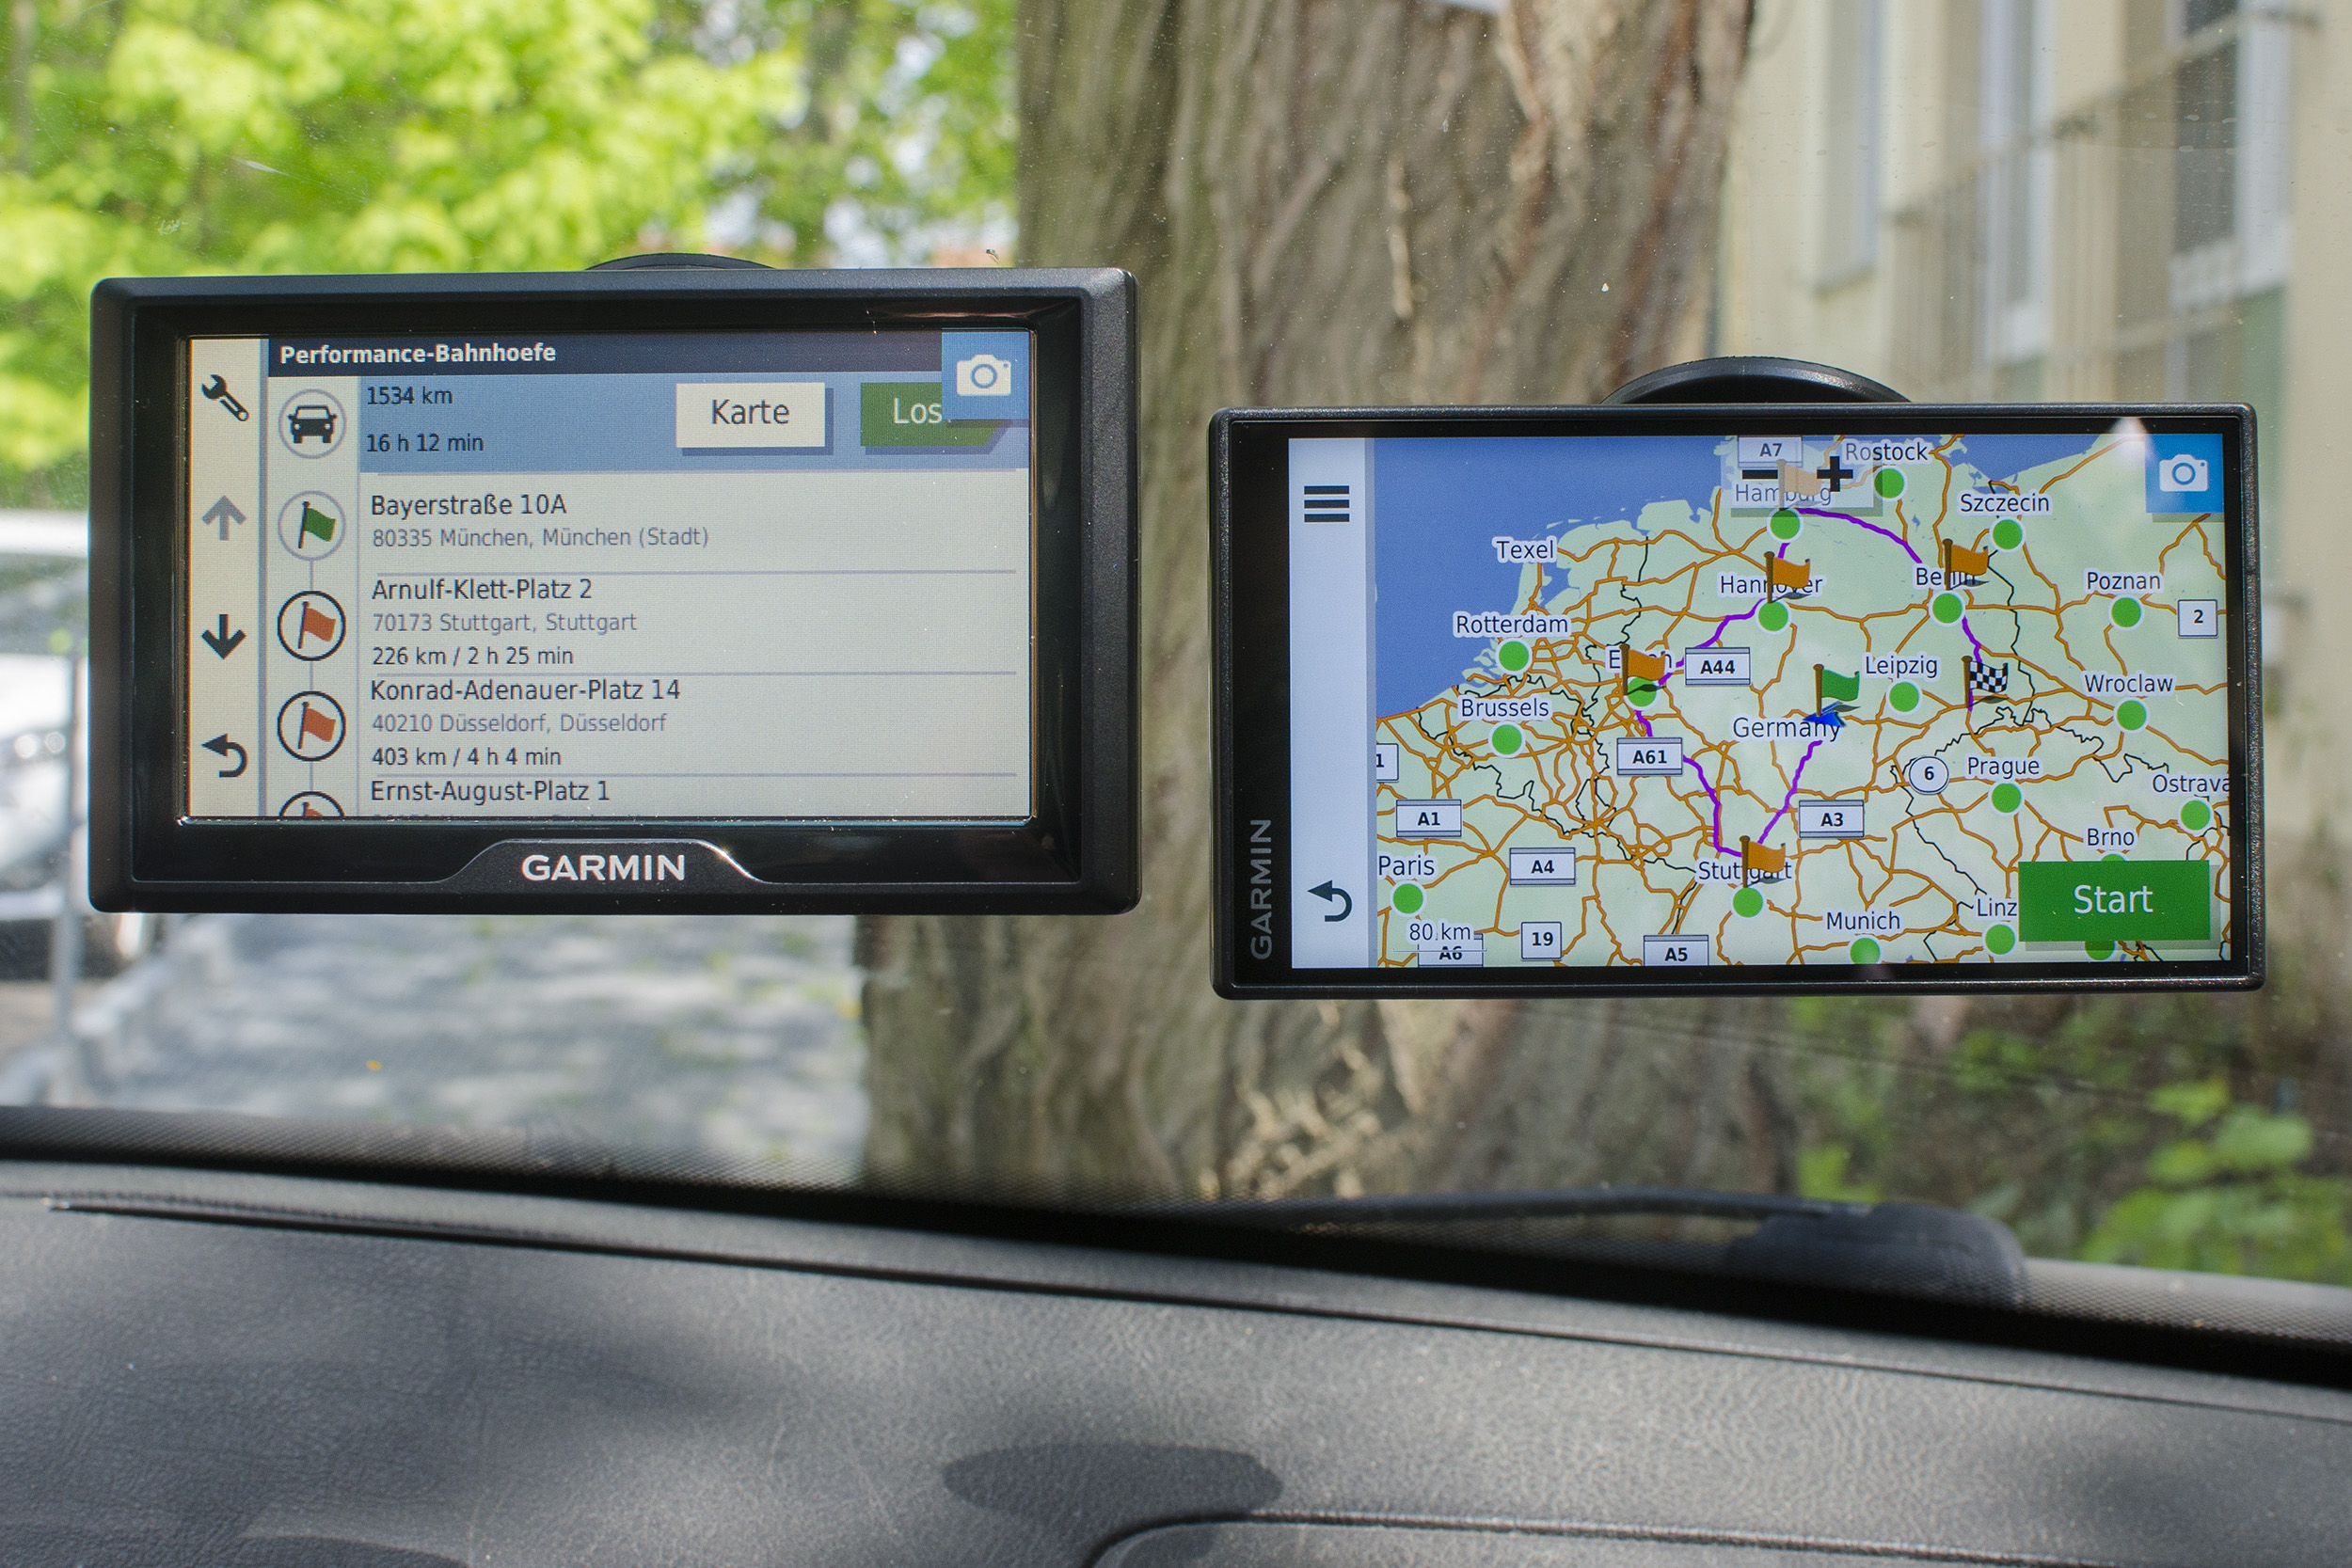 Garmin pocketnavigation.de Smart | Test 55 & GPS + Navigation POIs | 65 Drive Drive › | | 52 Blitzer